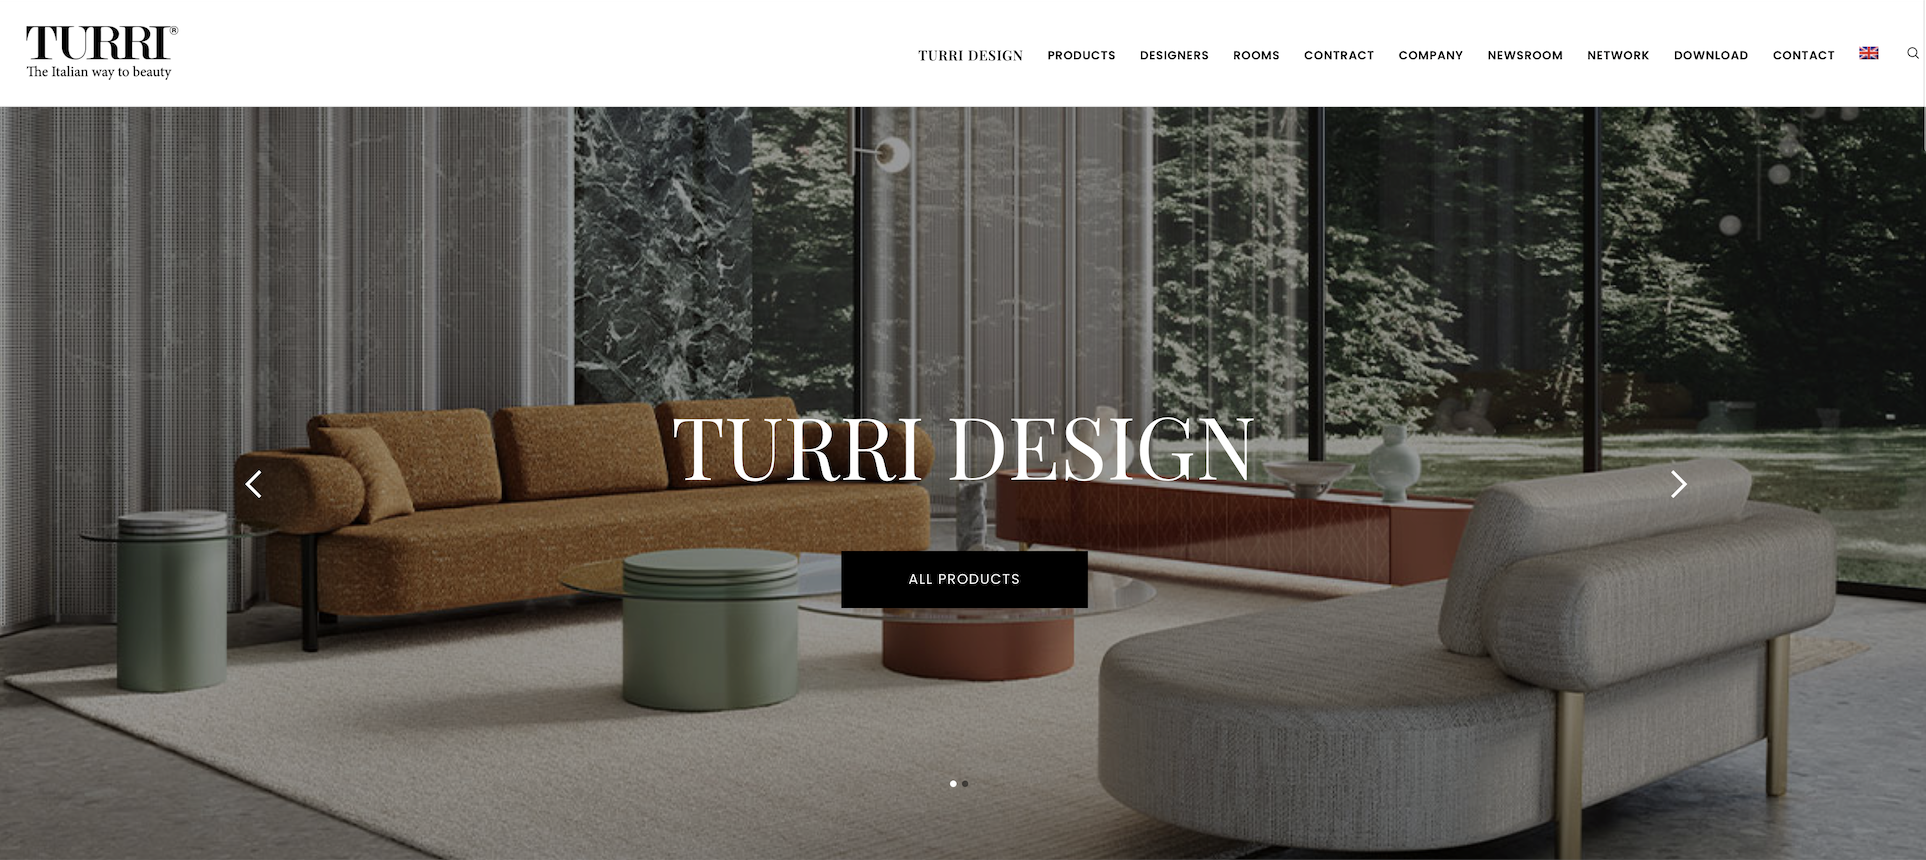 意大利高端设计家具集团 IDB 收购顶级家具品牌 Turri 母公司51%股权